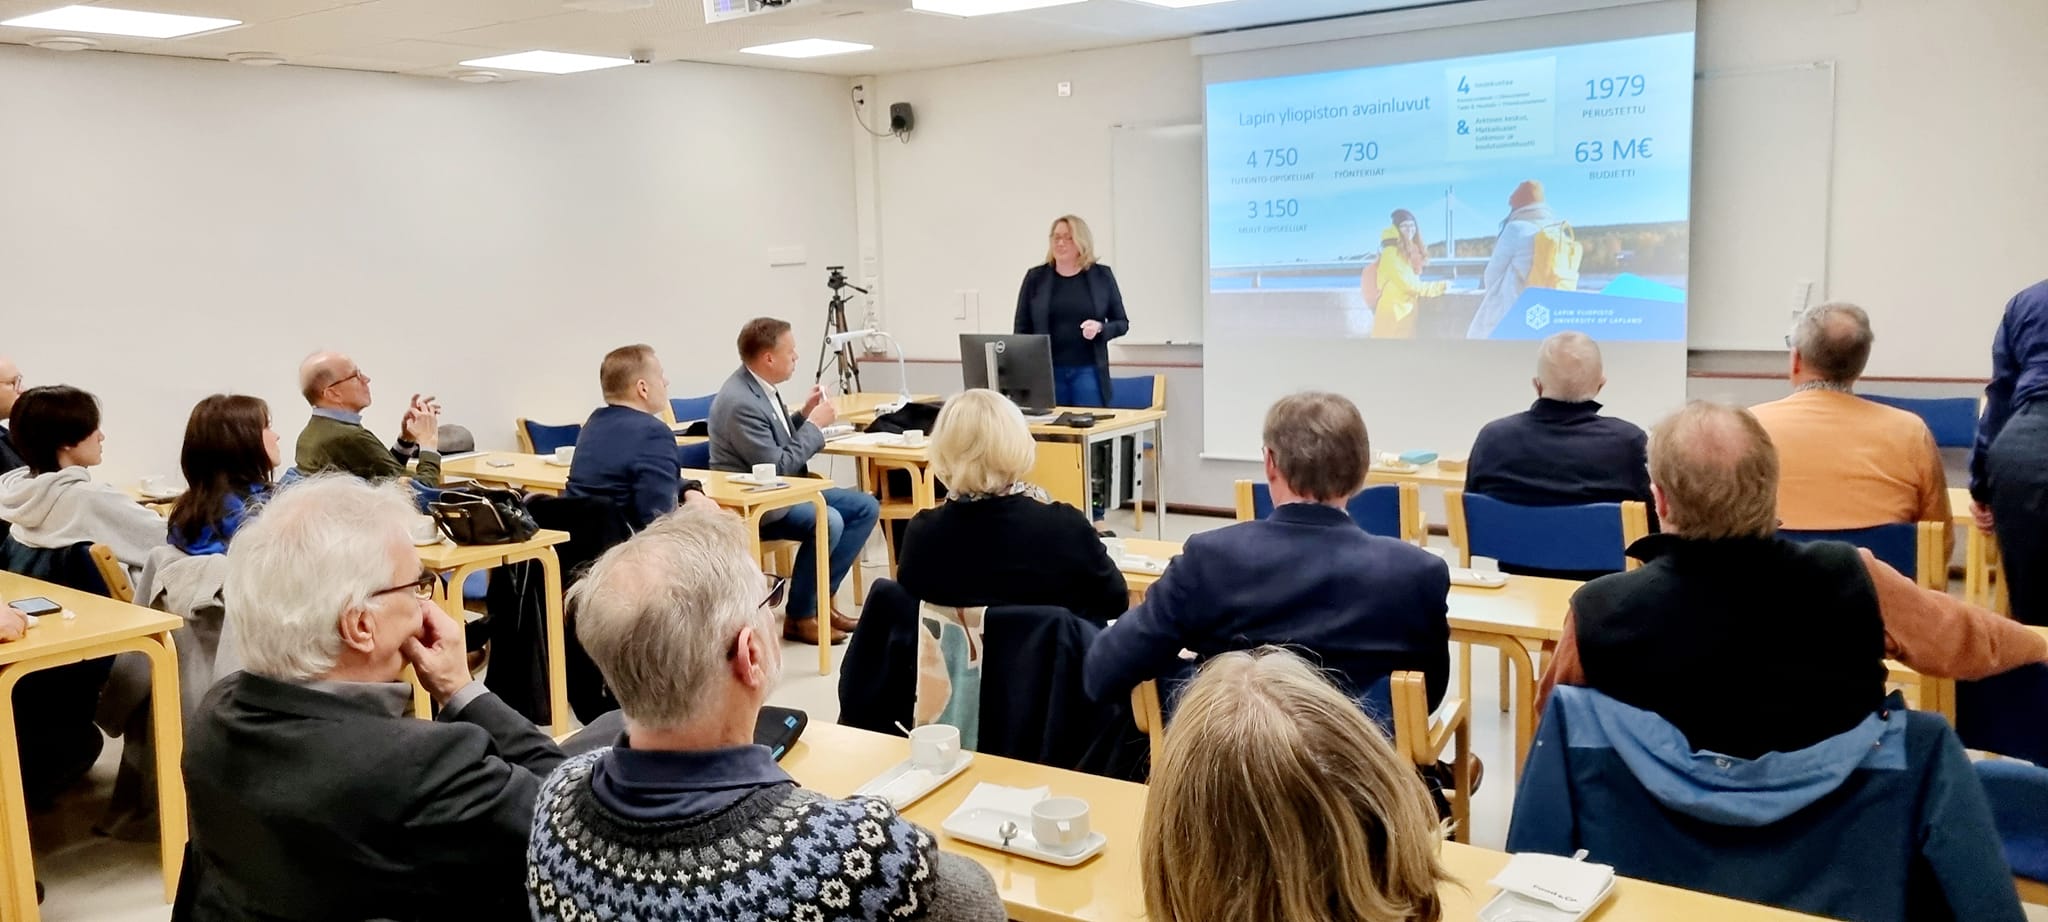 Lapin yliopiston koulutusvararehtori Satu Uusiautti esiintymässä Rovaniemen Rotaryklubin ja Rovaniemi Santa Claus Rotaryklubin yhteisellä yhteisövierailulla.